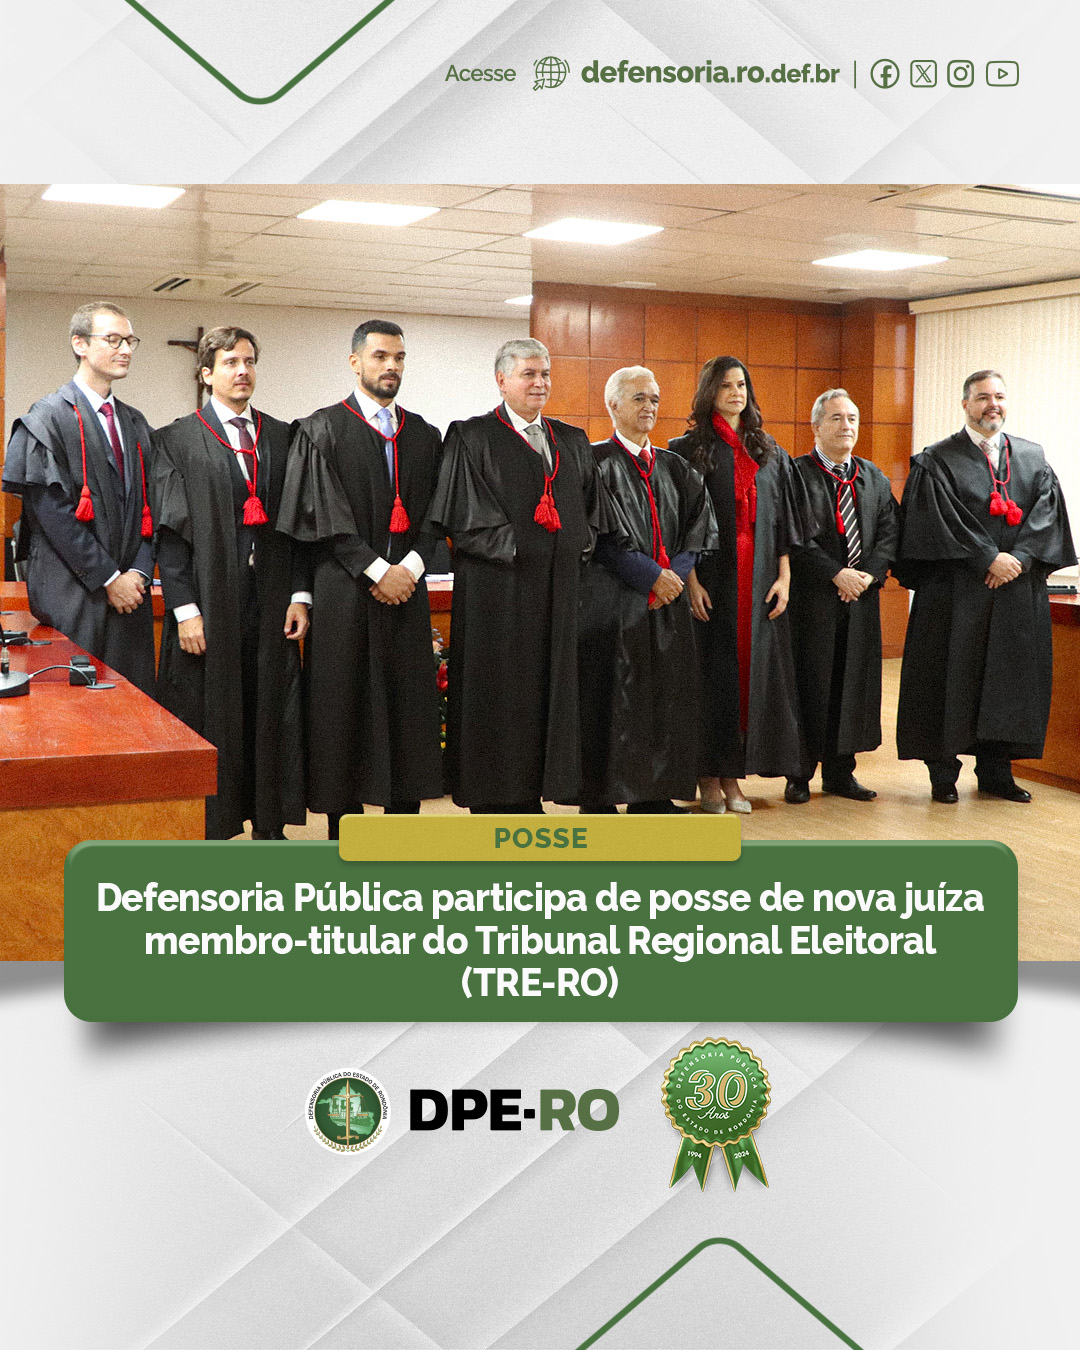 Defensoria Pública participa de posse de nova juíza membro-titular do Tribunal Regional Eleitoral (TRE-RO)